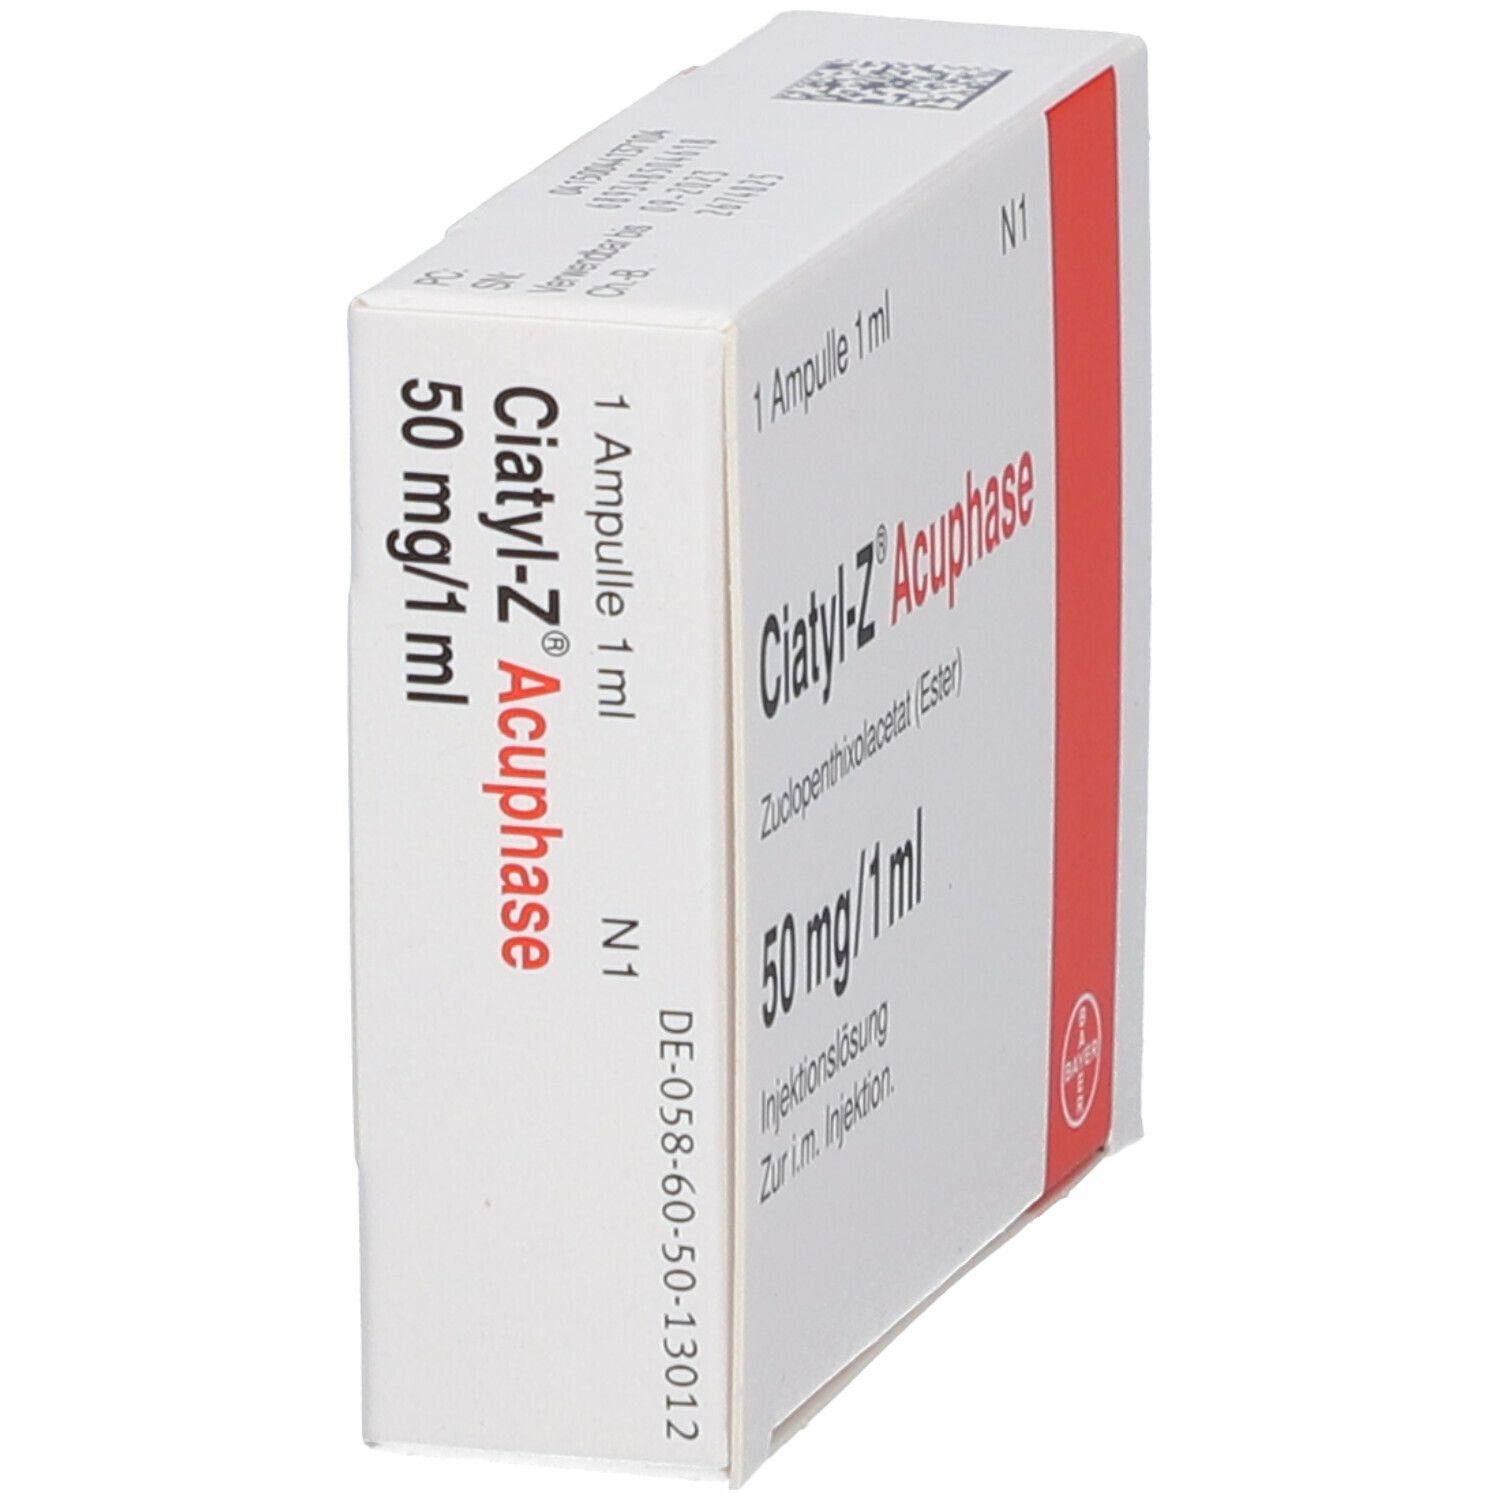 Ciatyl-Z® Acuphase 50 mg/ml